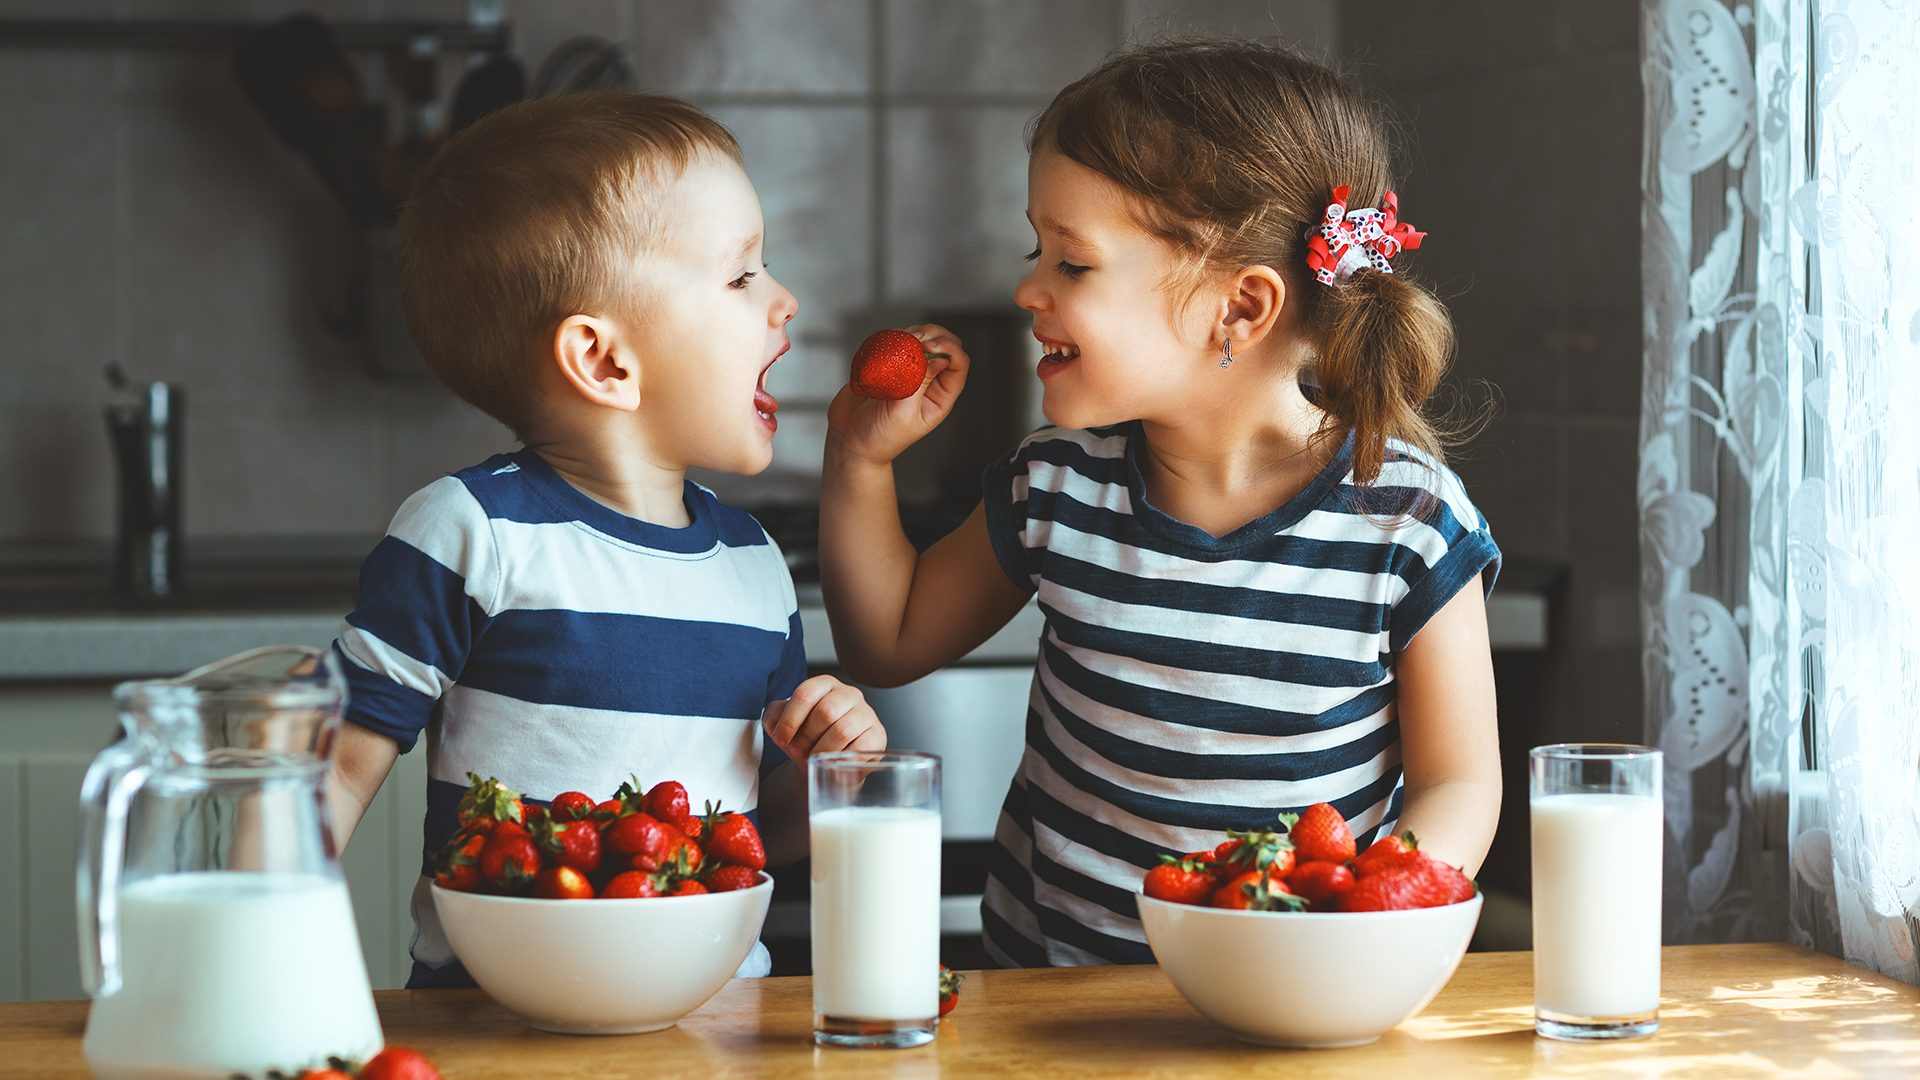 Ubicar la frutera cerca y a la vista de los niños sirve para que se familiaricen con los colores y sabores (Getty)